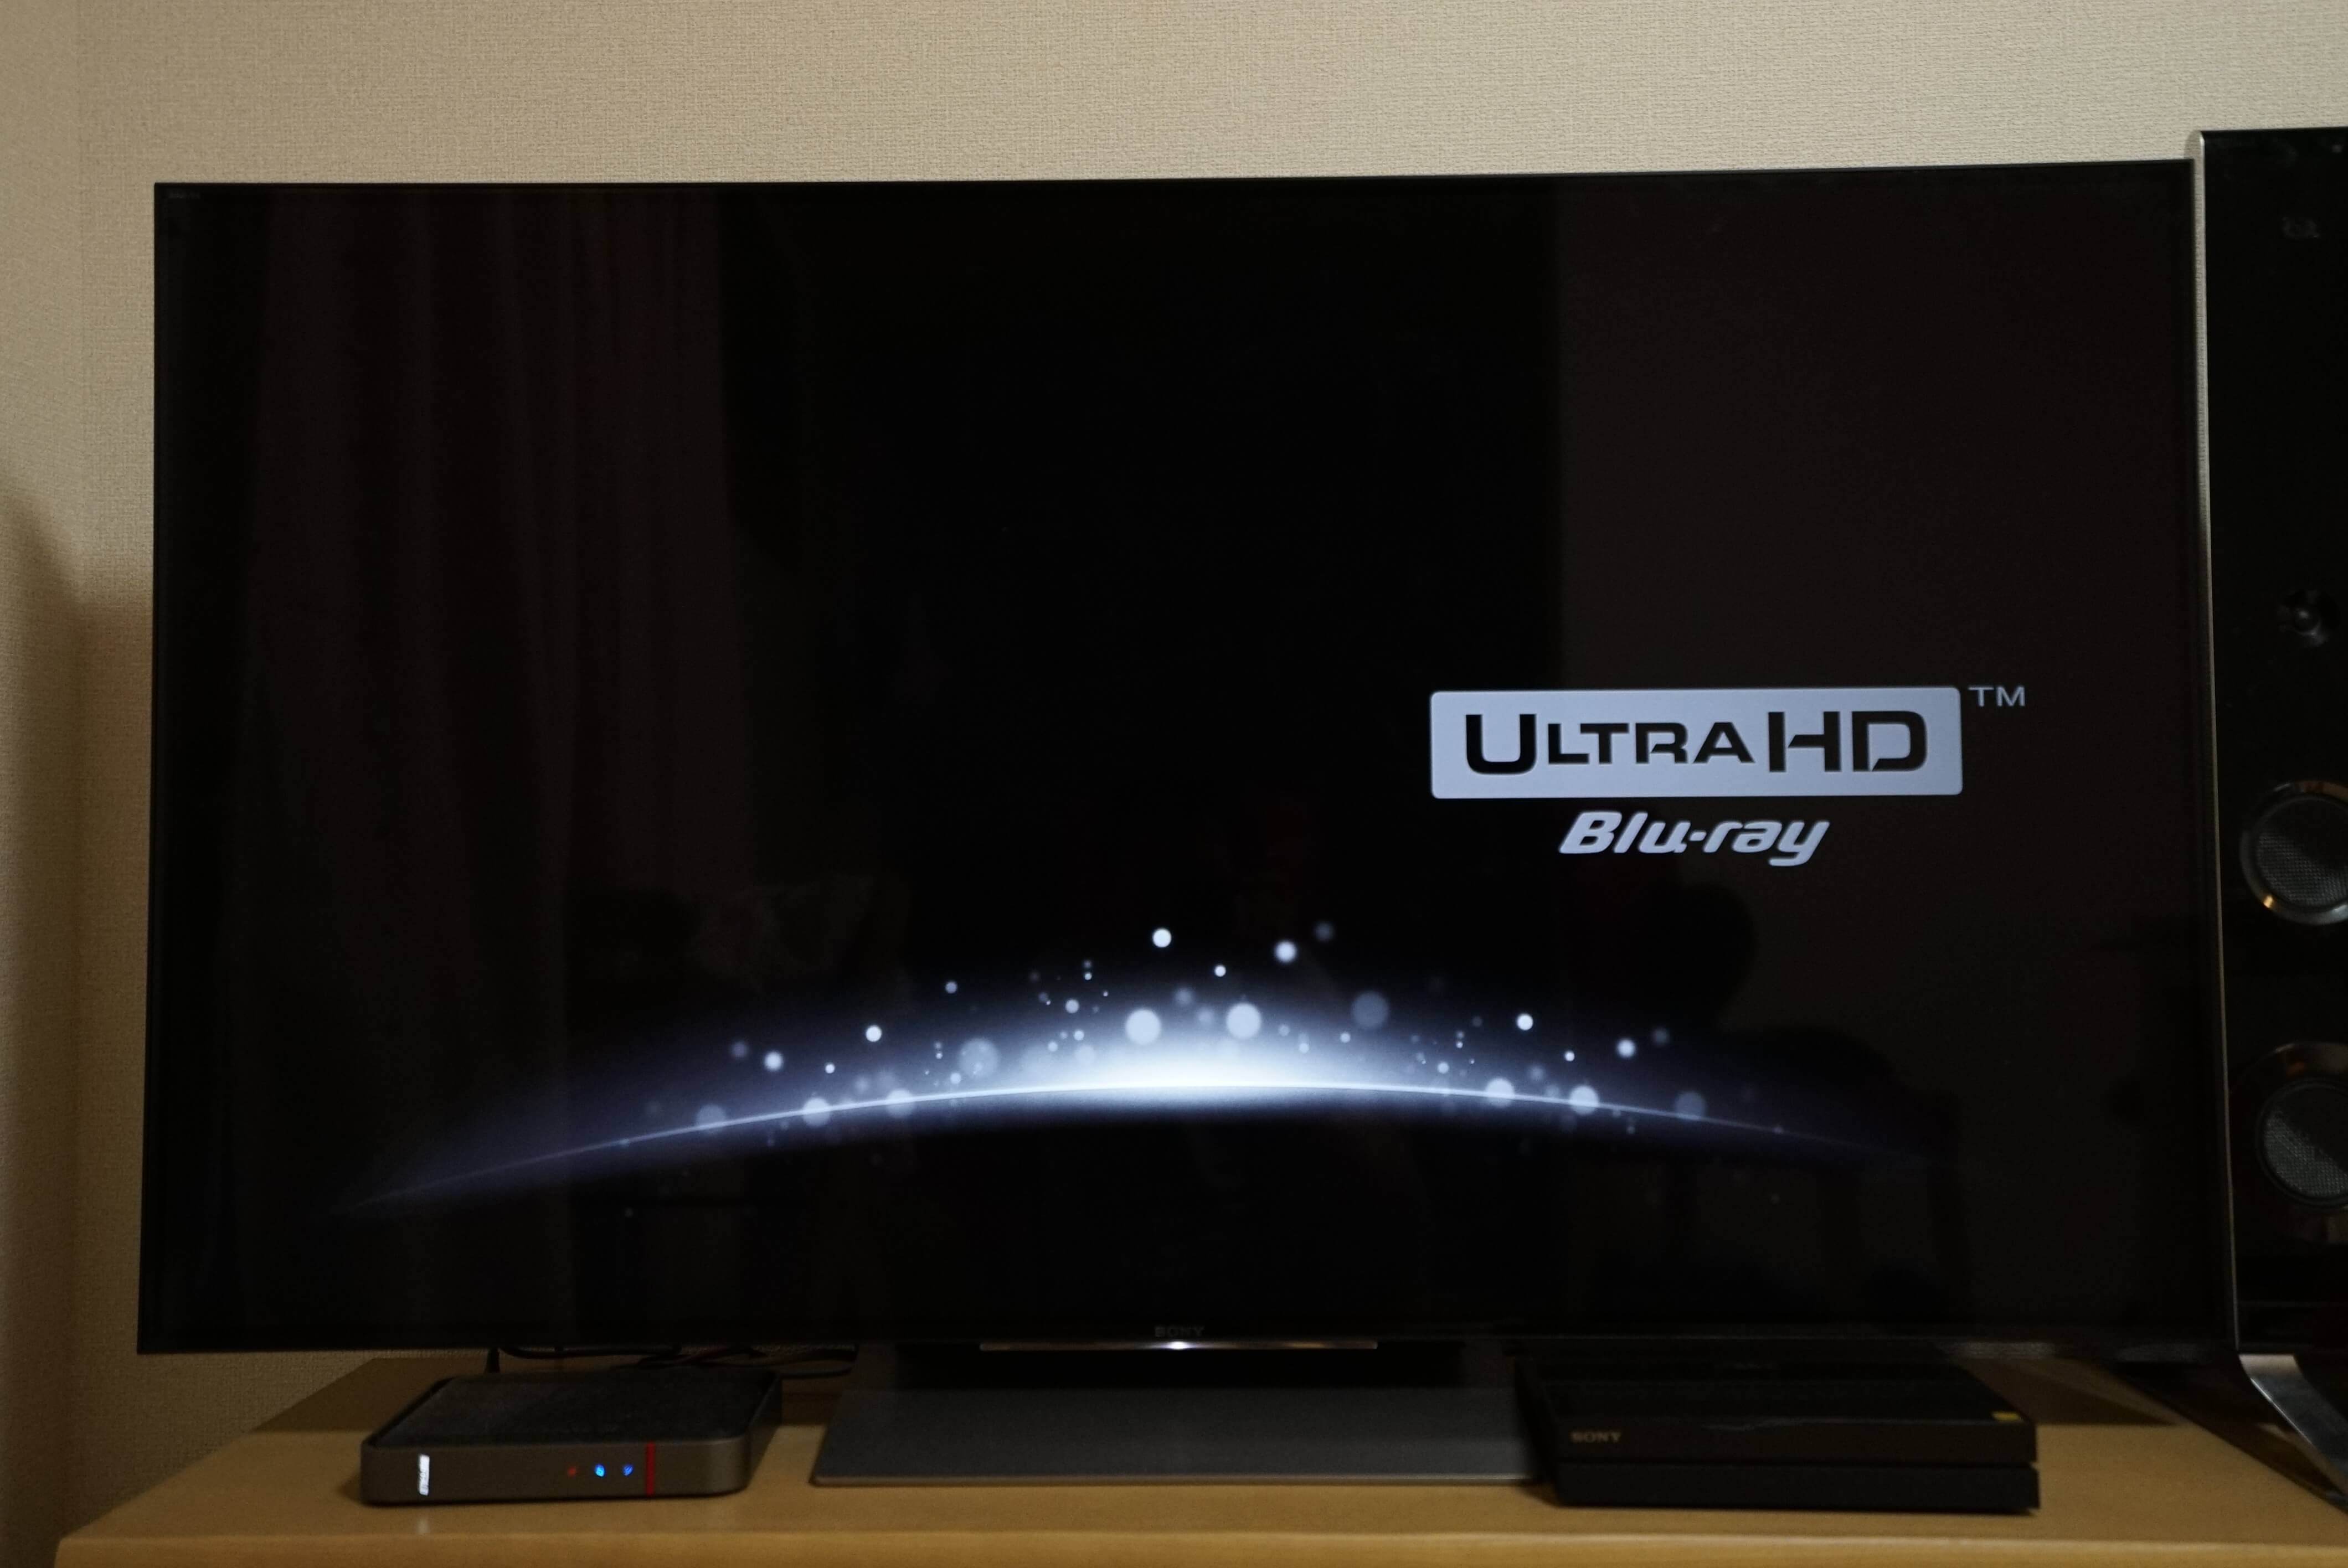 Ultra HD Blu-rayを視聴するにはどの機種がBest?│4KテレビLife